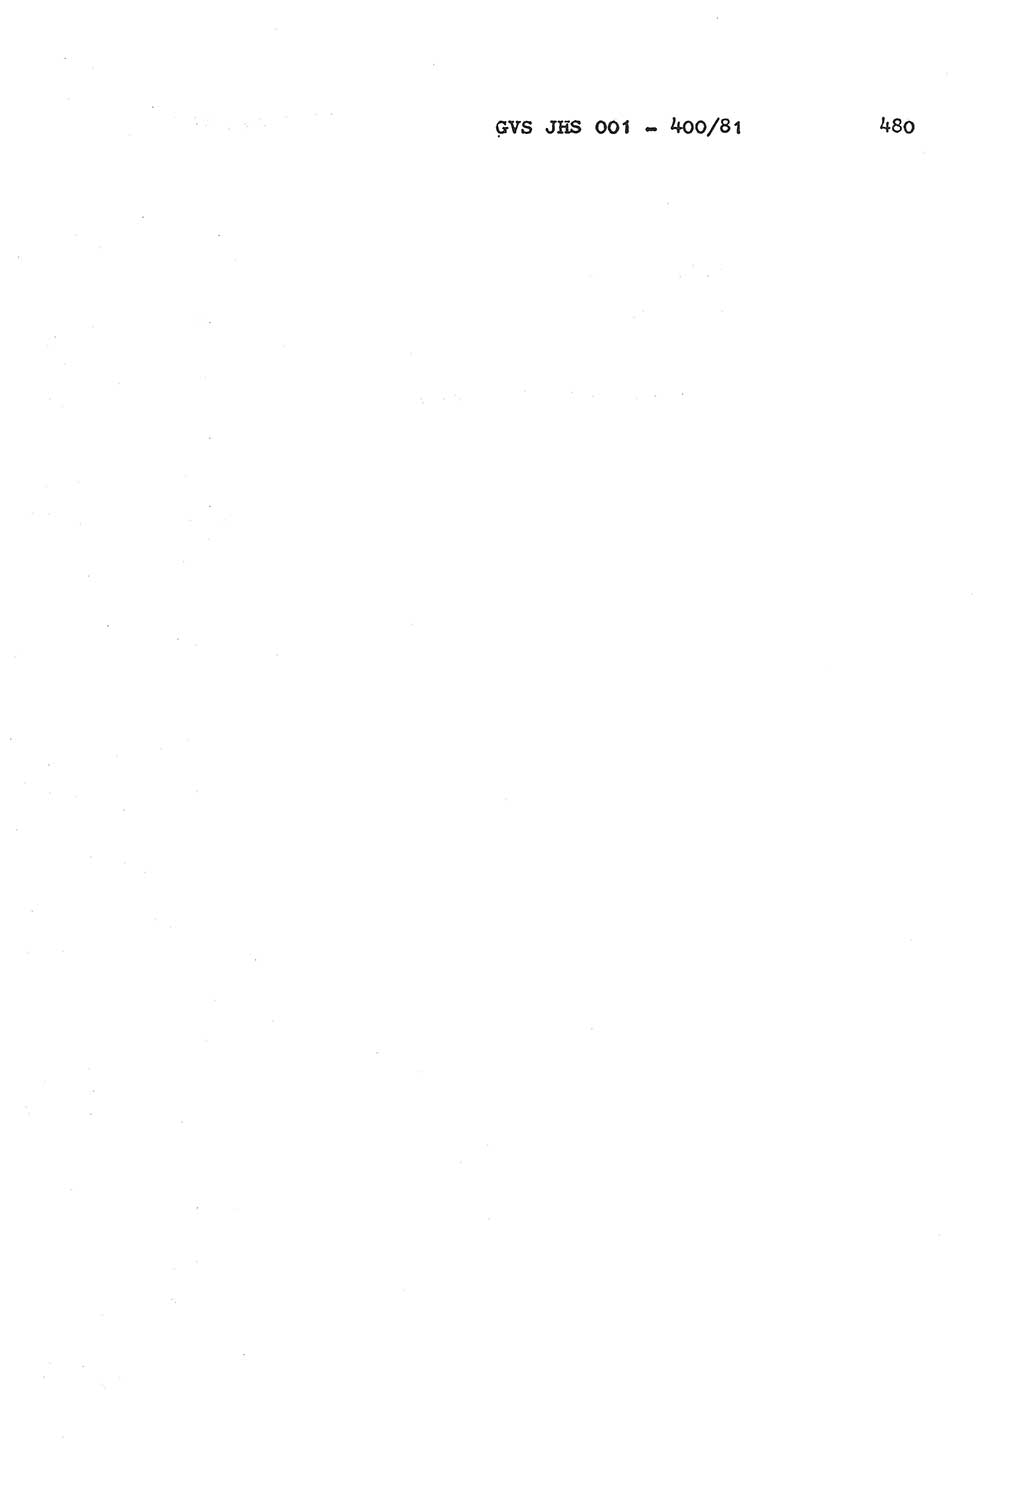 Wörterbuch der politisch-operativen Arbeit, Ministerium für Staatssicherheit (MfS) [Deutsche Demokratische Republik (DDR)], Juristische Hochschule (JHS), Geheime Verschlußsache (GVS) o001-400/81, Potsdam 1985, Blatt 480 (Wb. pol.-op. Arb. MfS DDR JHS GVS o001-400/81 1985, Bl. 480)